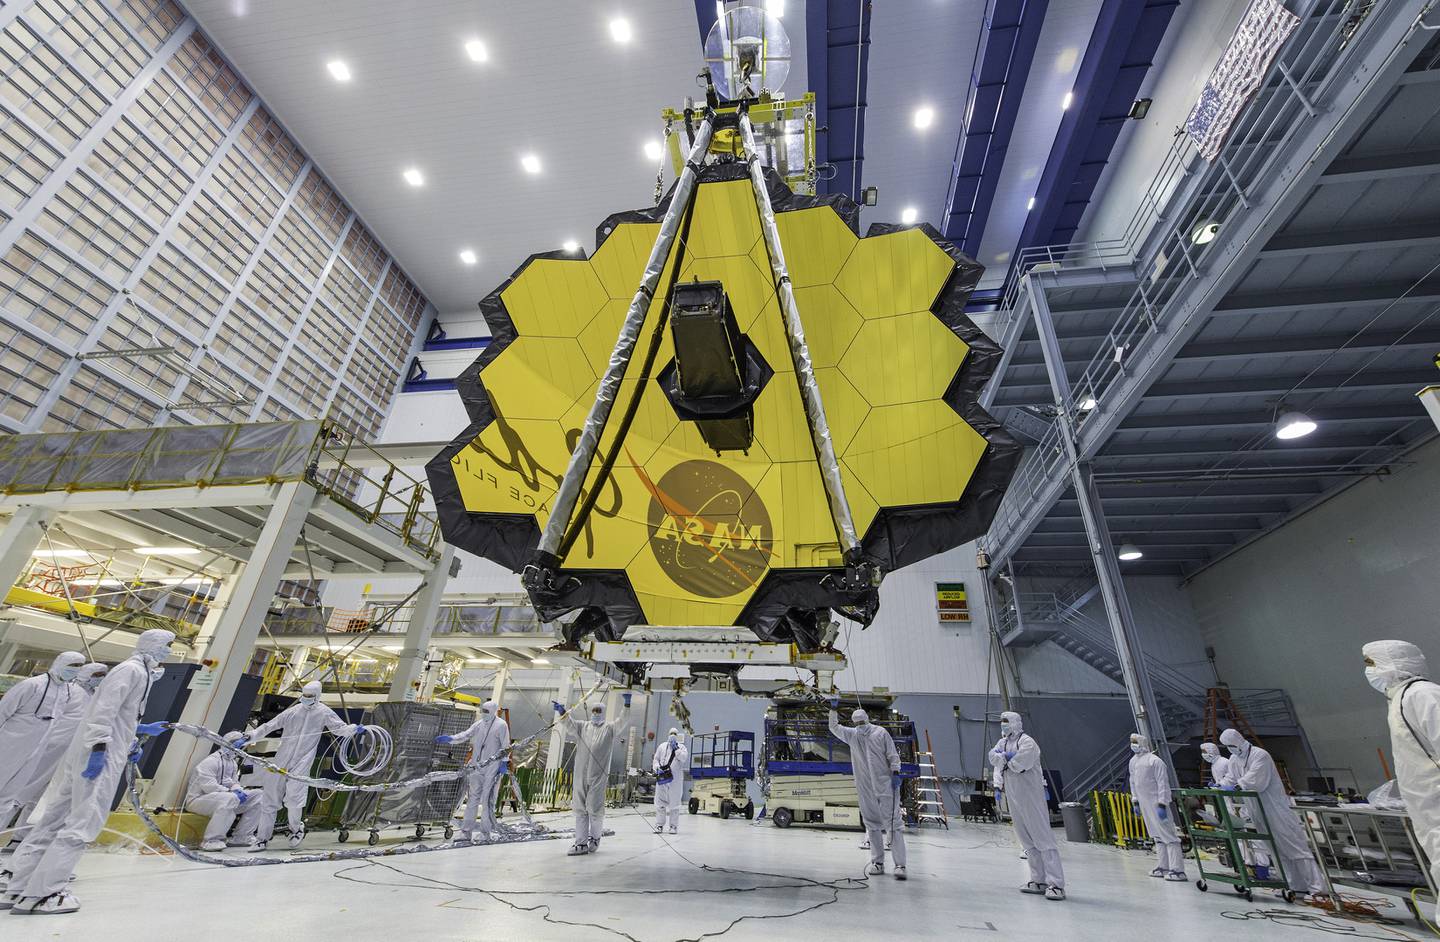 James Webb-teleskopet er på plass i verdensrommet. Her fra Goddard Space Flight Center i USA i april 2017.